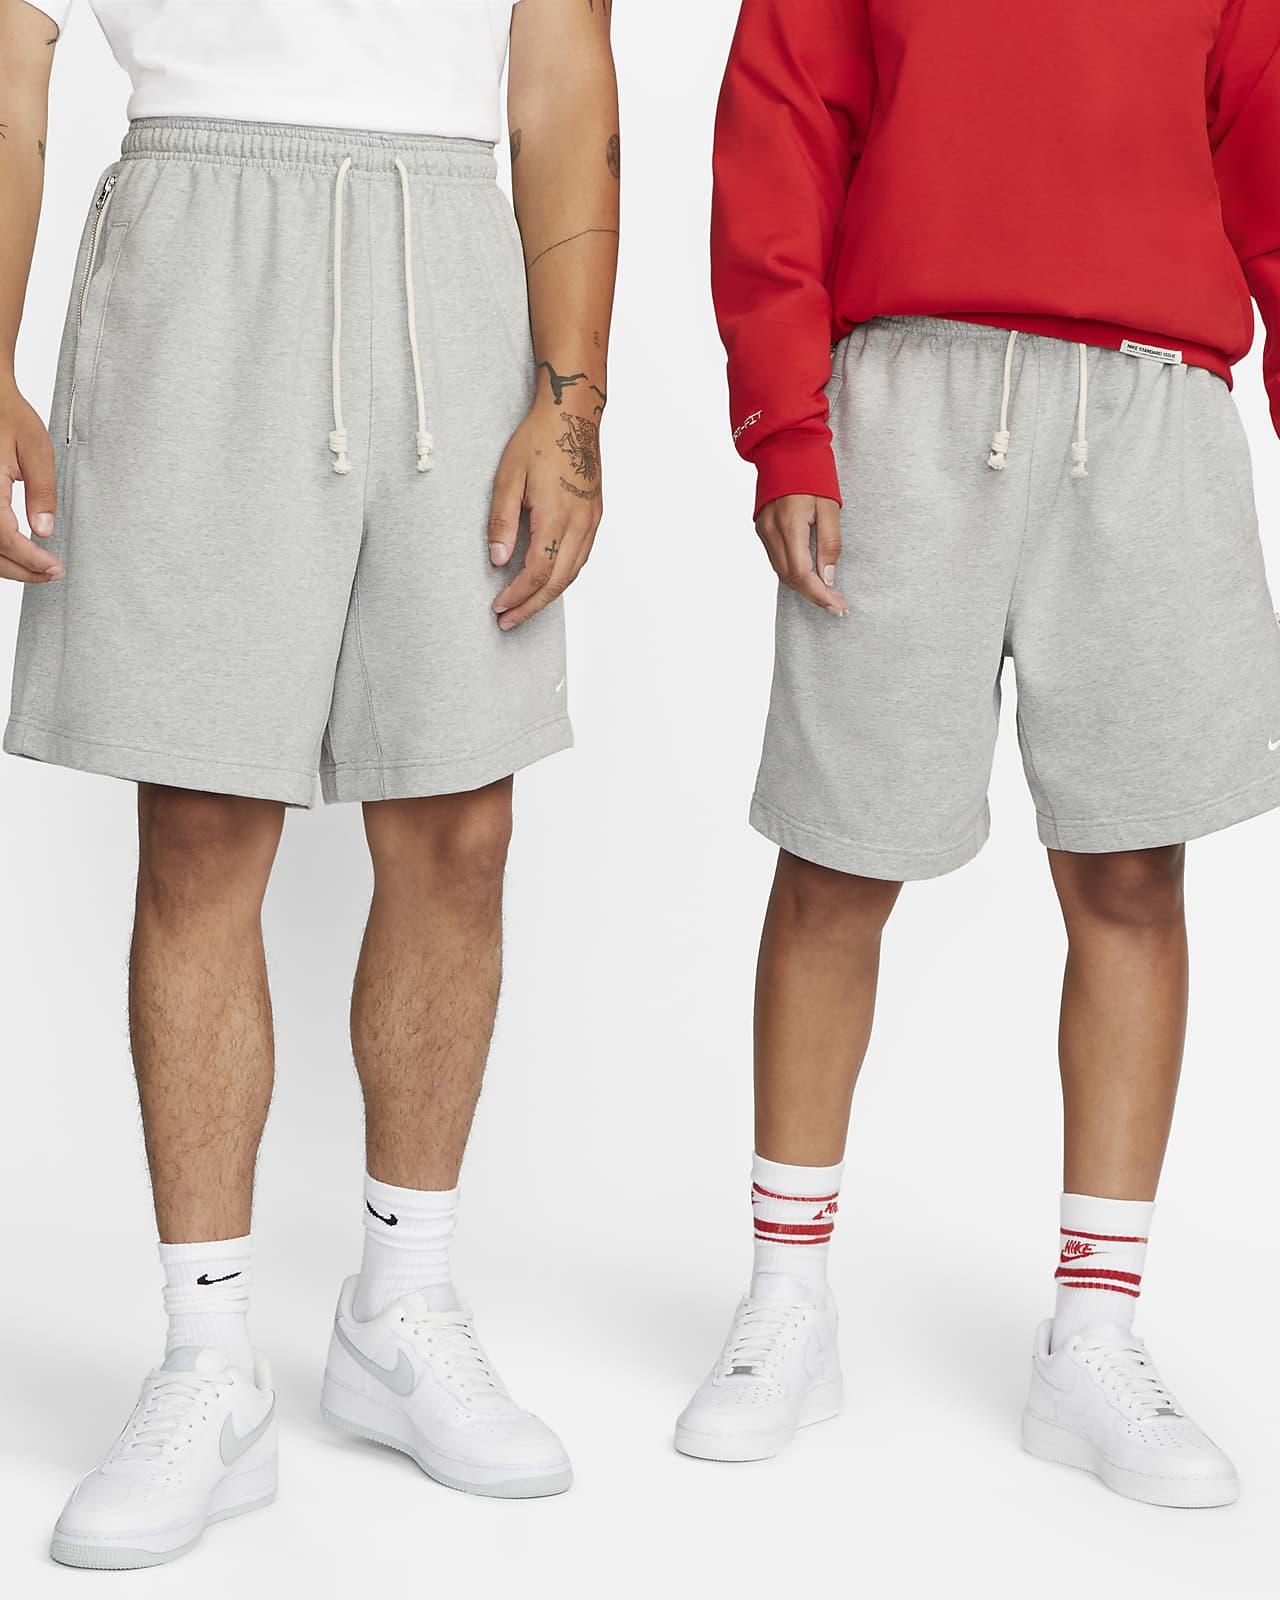 Shorts de básquetbol Dri-FIT de 20 cm para hombre Nike Standard Issue